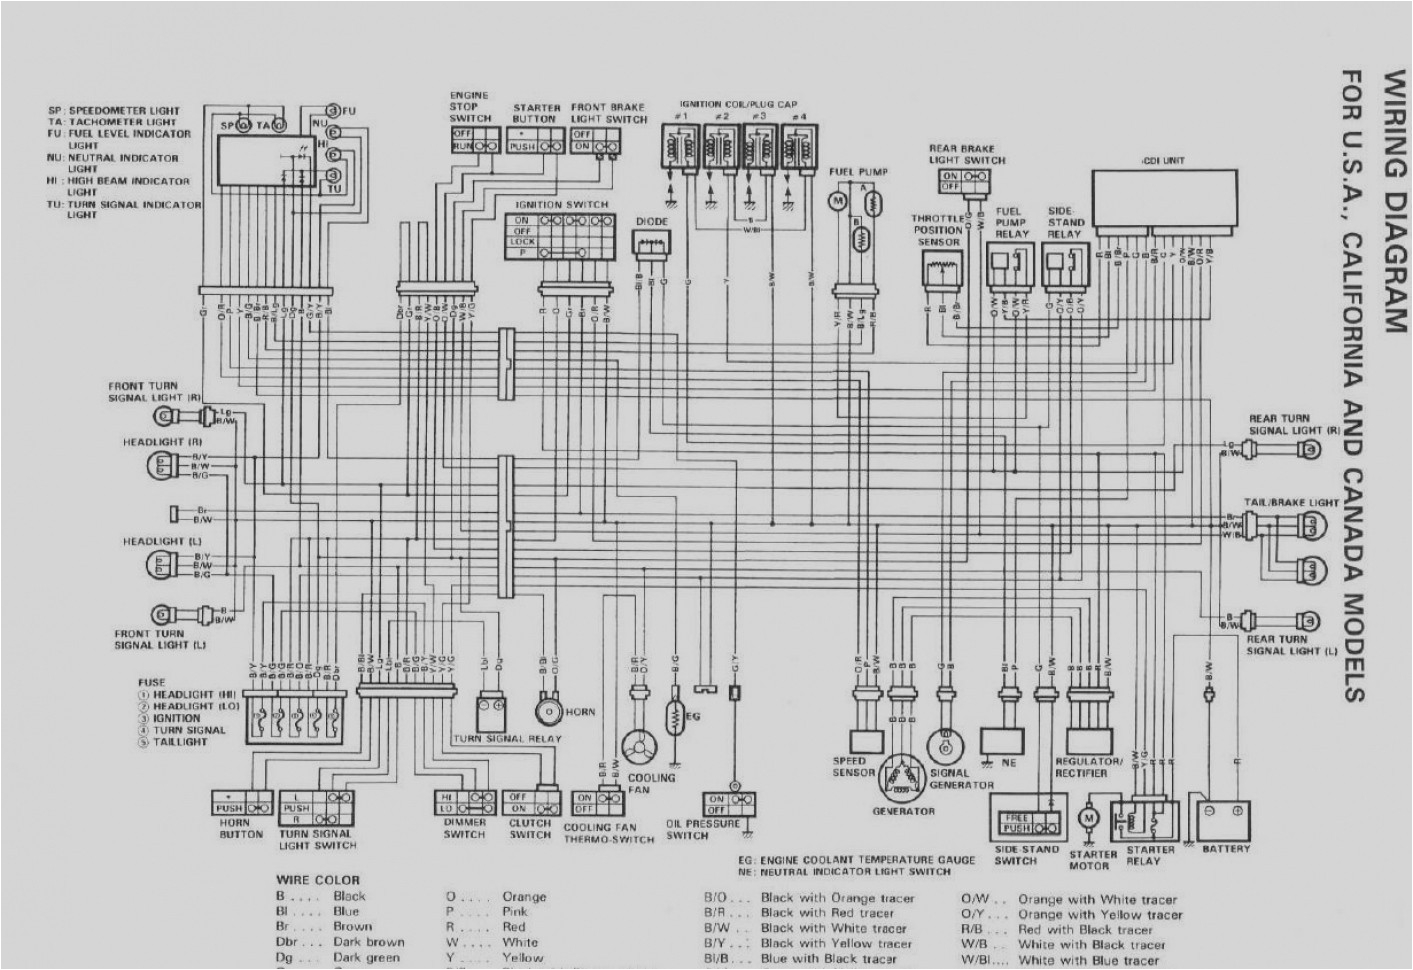 wiring diagram 2001 gsxr 600 wiring diagram user suzuki grand vitara rear lights wiring diagram suzuki lights wiring diagram